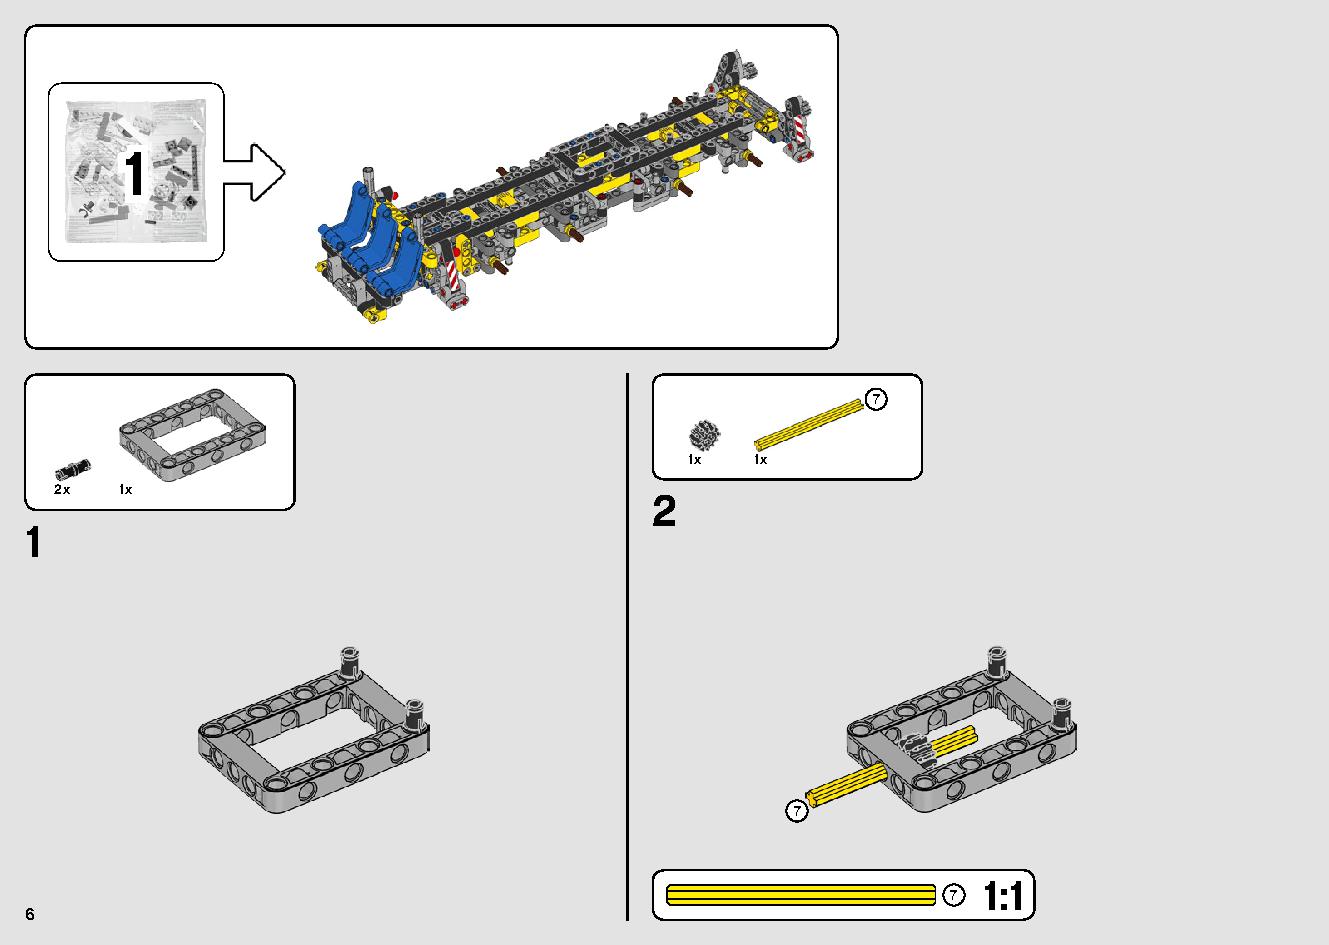 移動式クレーン車 42108 レゴの商品情報 レゴの説明書・組立方法 6 page